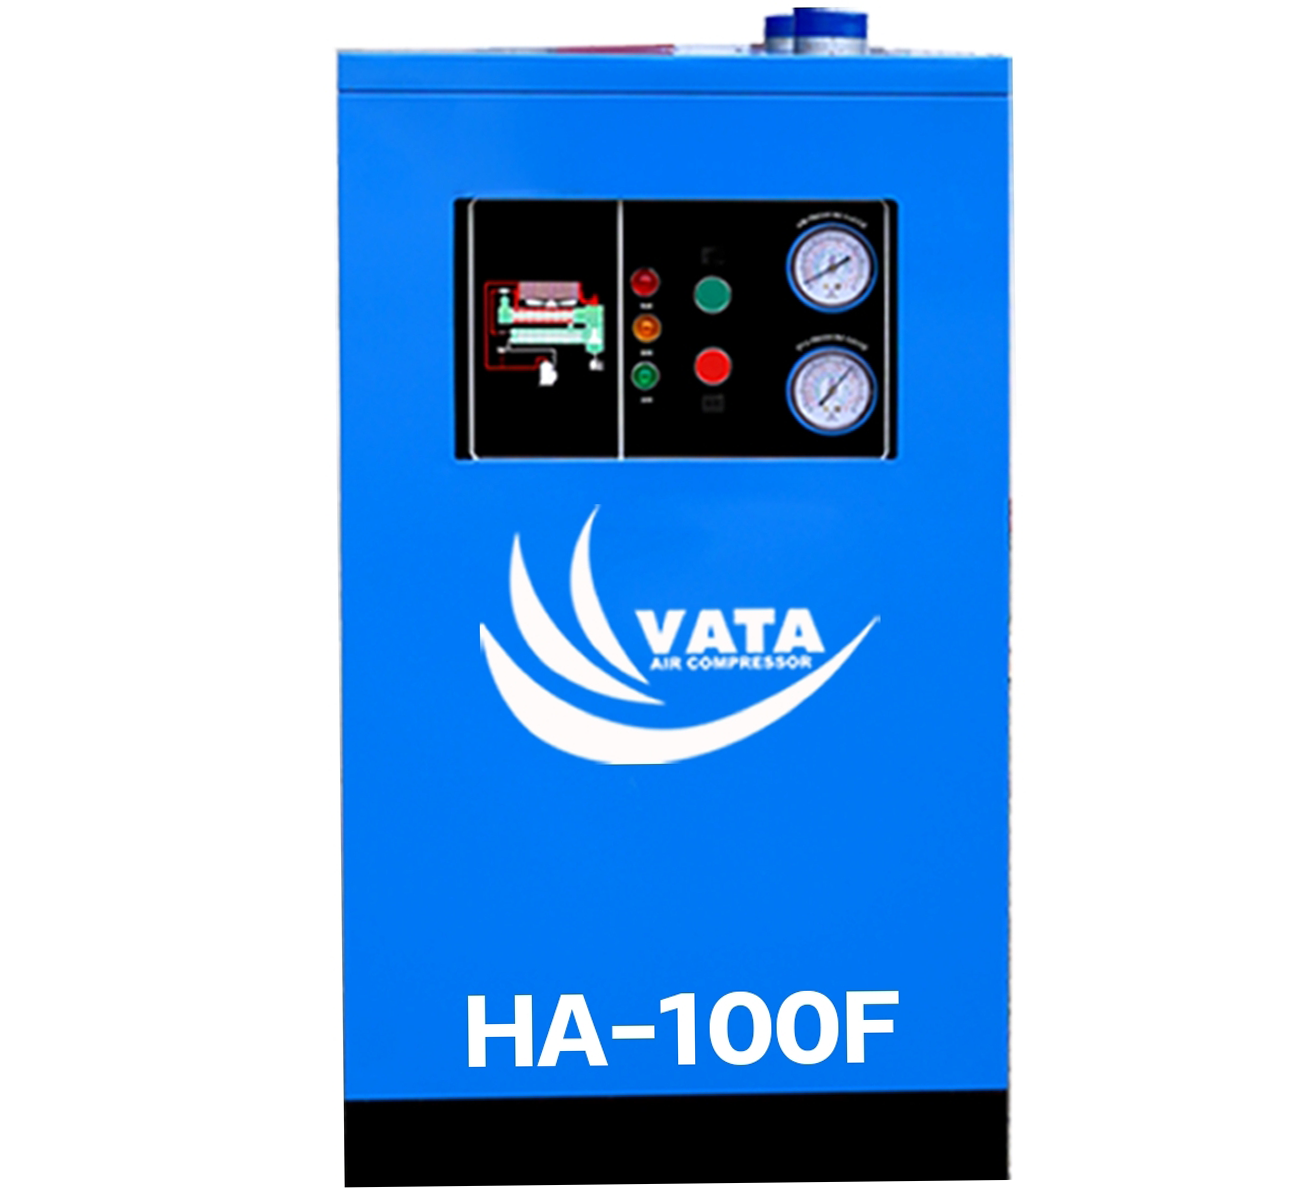 เครื่องทำลมแห้ง Refrigerated Air Dryer แบรนด์ VATA รุ่น HA-100F ขนาด 3 kw. ไฟฟ้า 380V รับประกันสินค้า 1 ปี ตามเงื่อนไขของบริษัทฯ